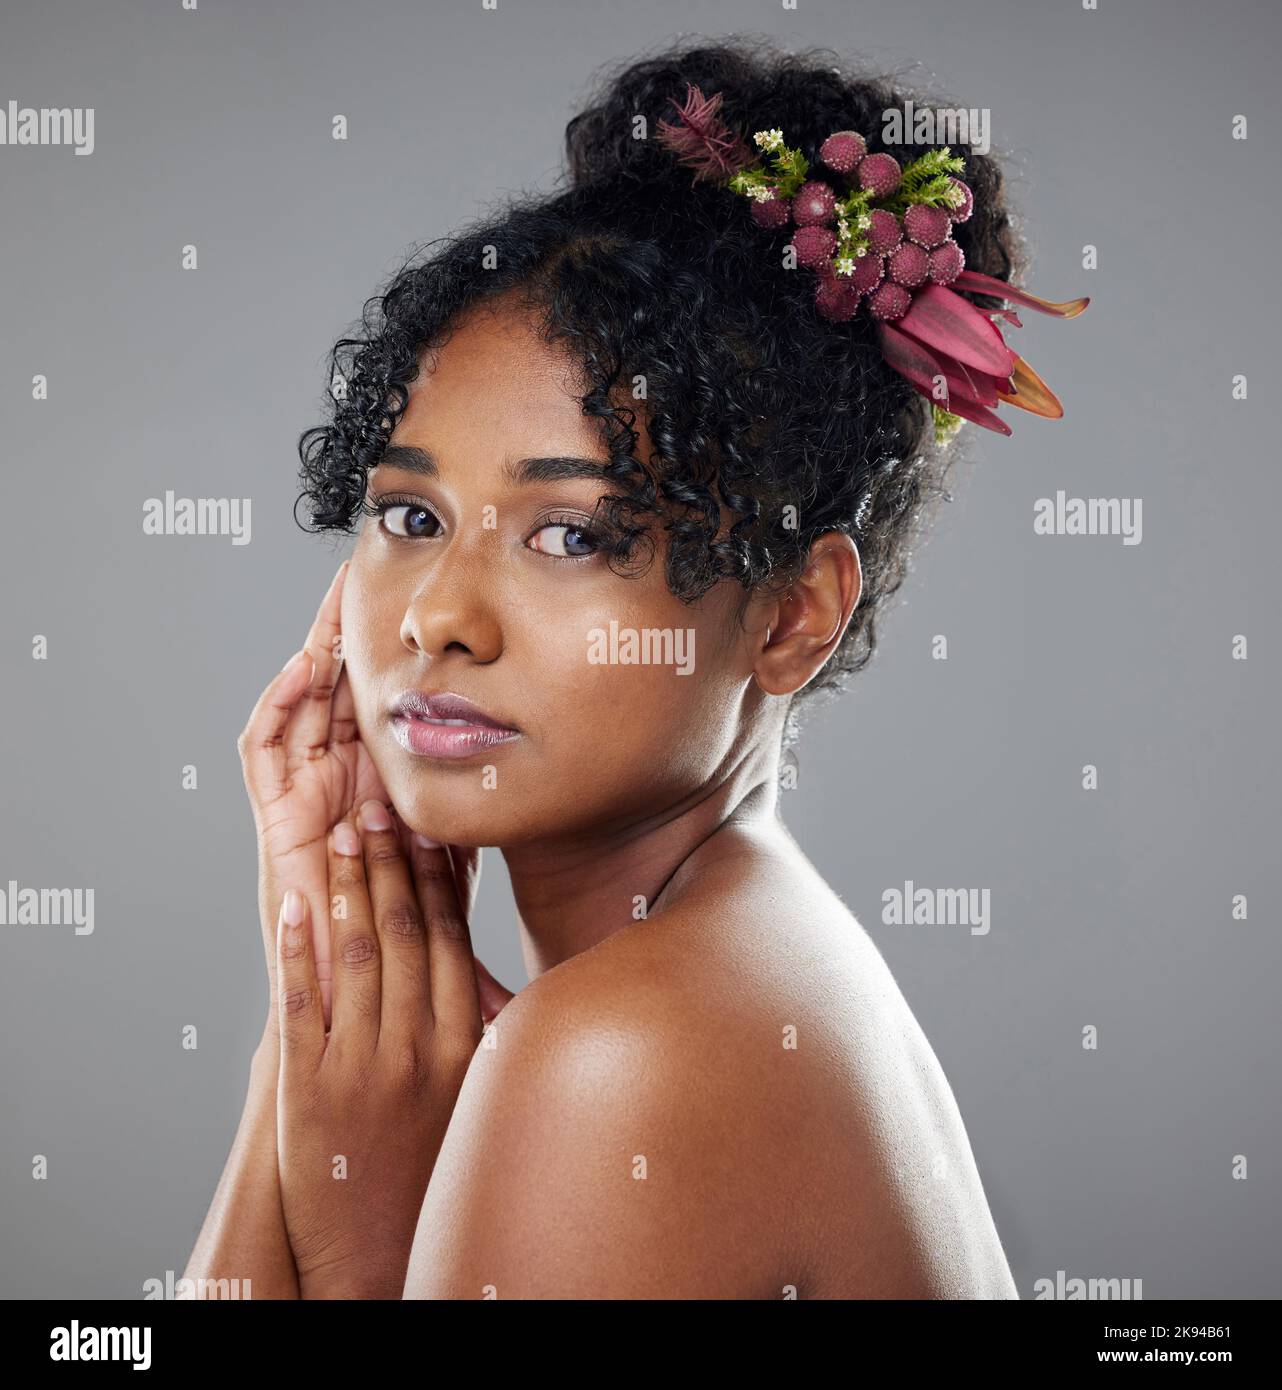 Schwarze Frau, Schönheit und Haare in der Hautpflegekunst für Make-up, Kosmetik oder Behandlung vor grauem Studiohintergrund. Porträt einer afroamerikanischen Frau Stockfoto